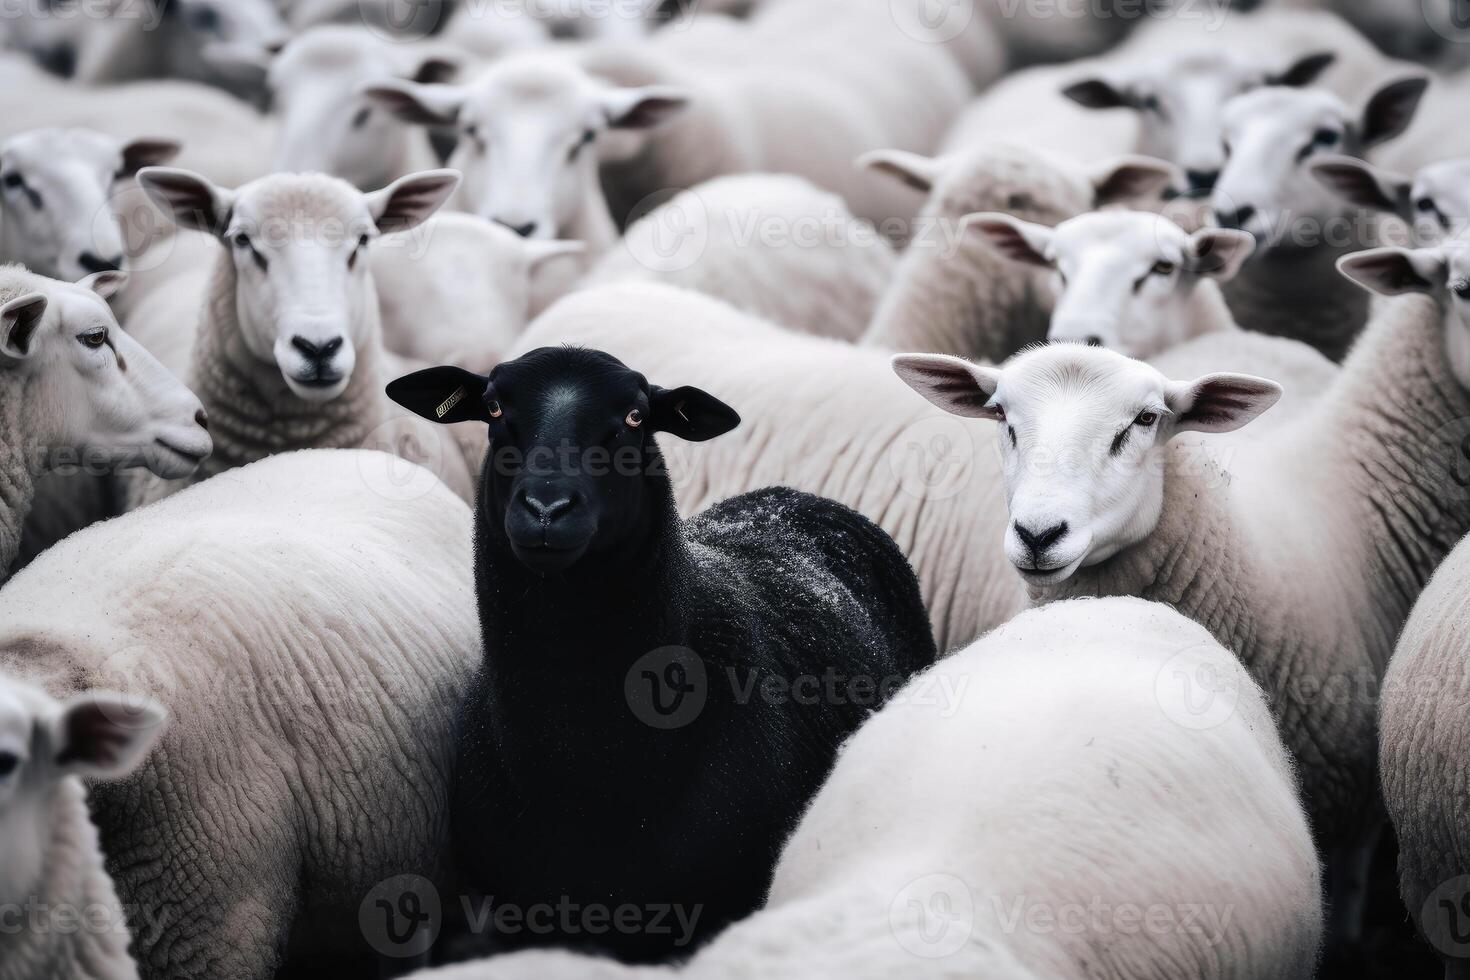 ett svart får i en besättning av vit får. foto